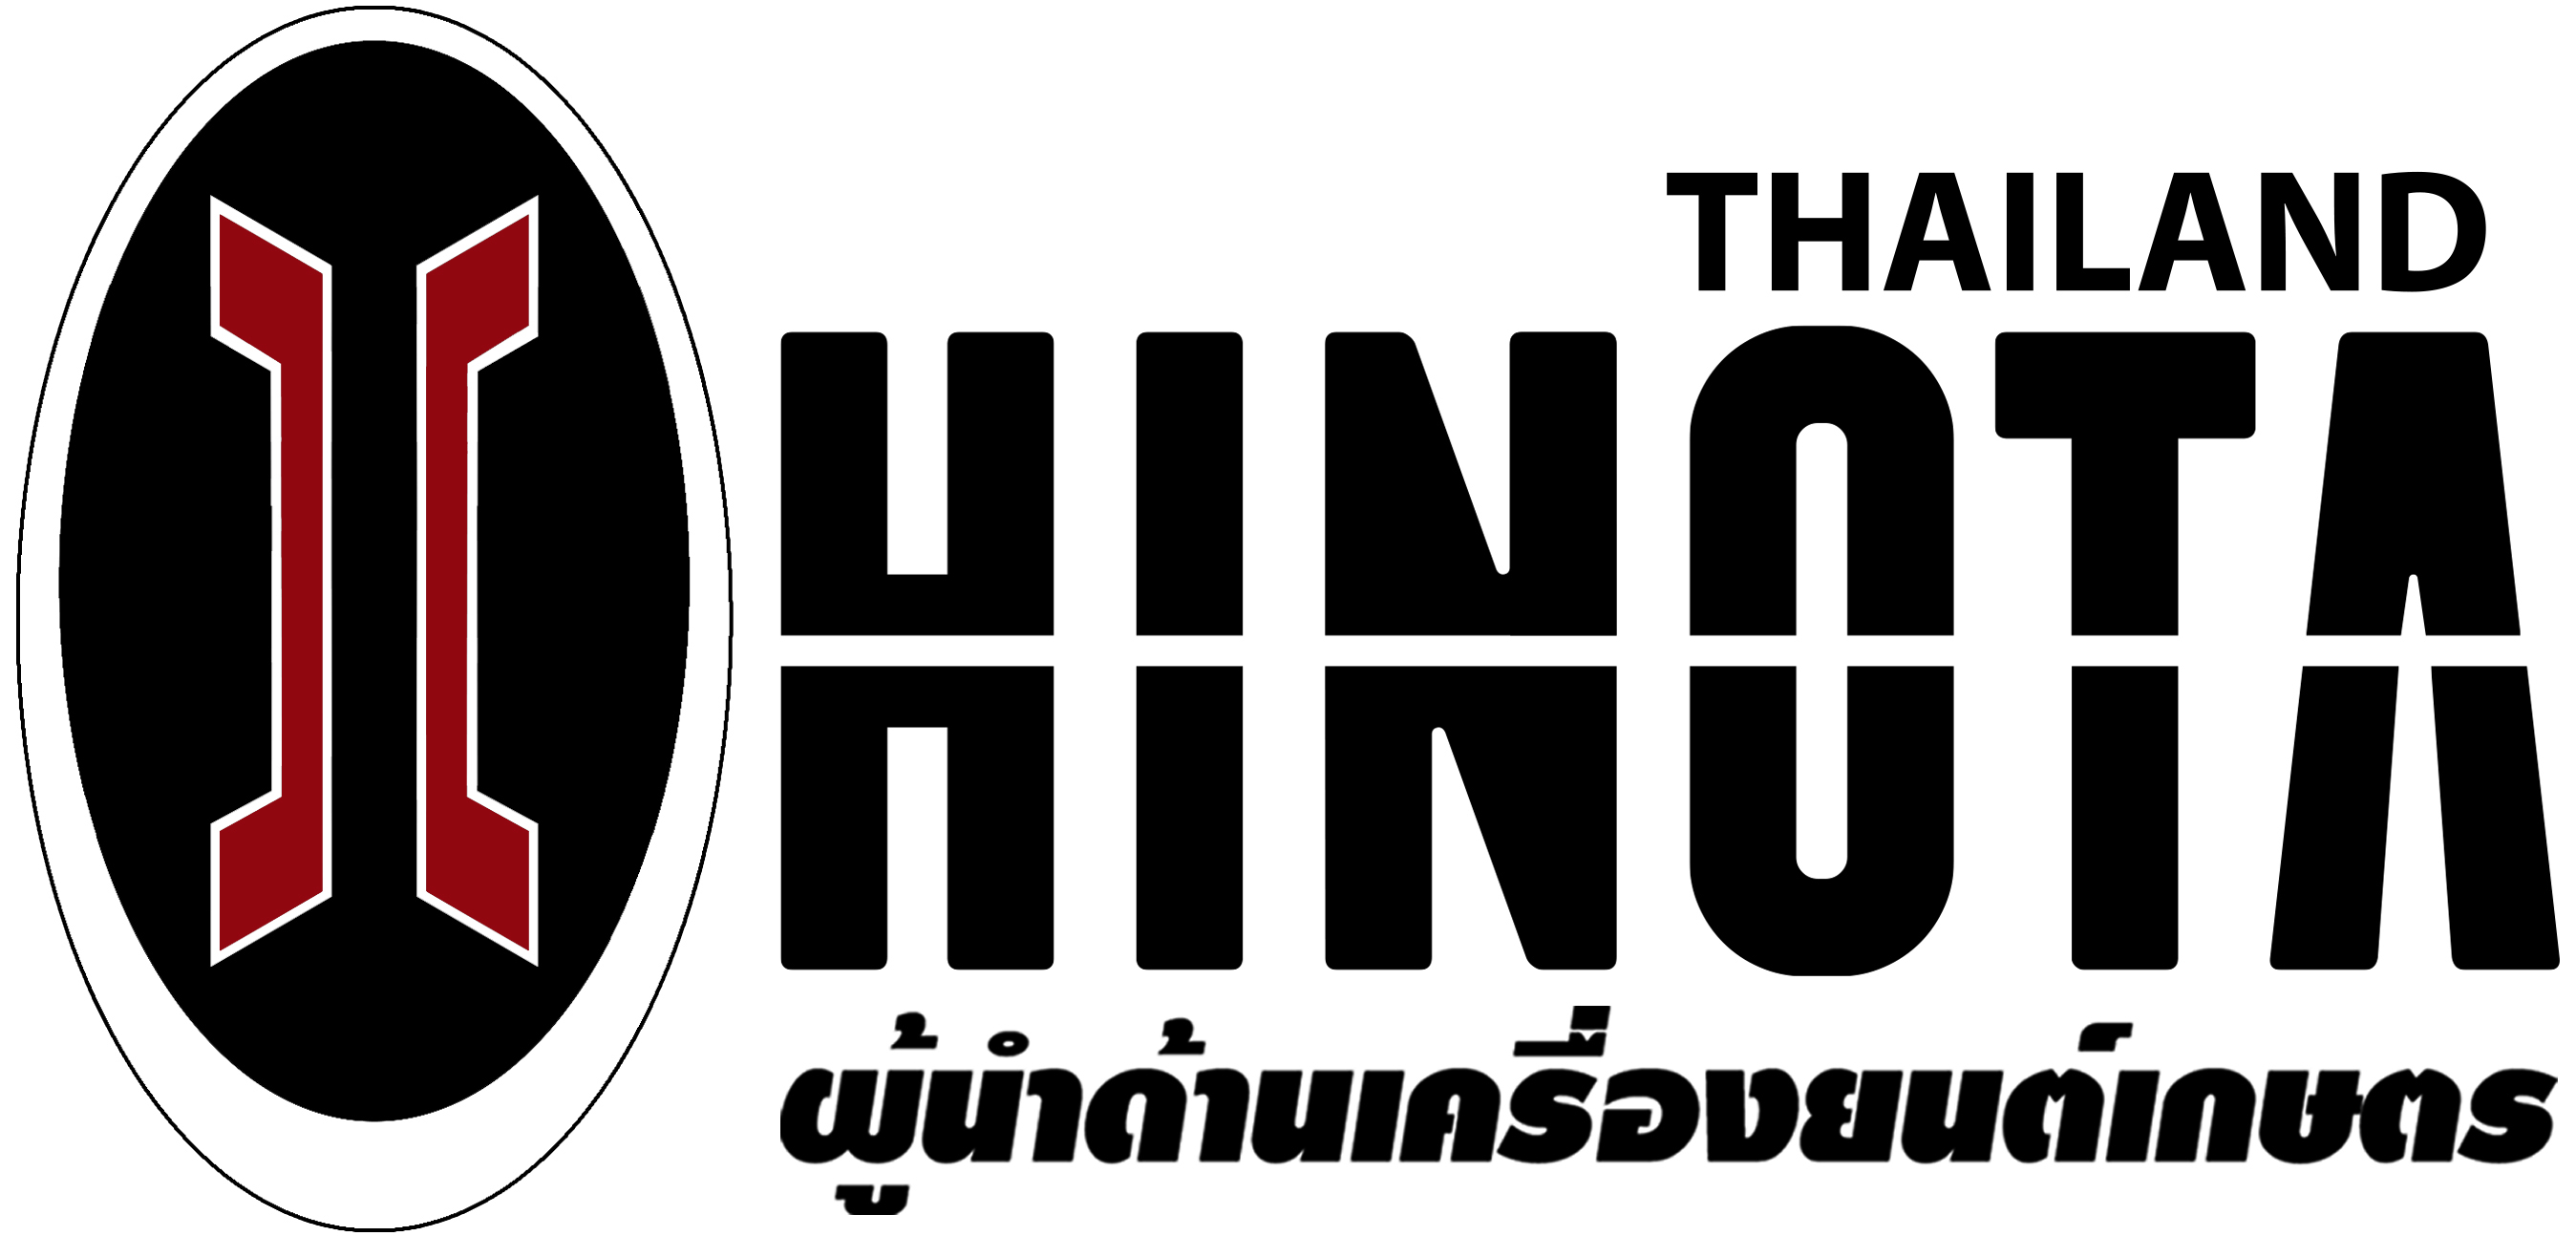 บริษัทอีดีไอ โกลบัล แมนชินเนอรี่(ประเทศไทย) จำกัด logo โลโก้